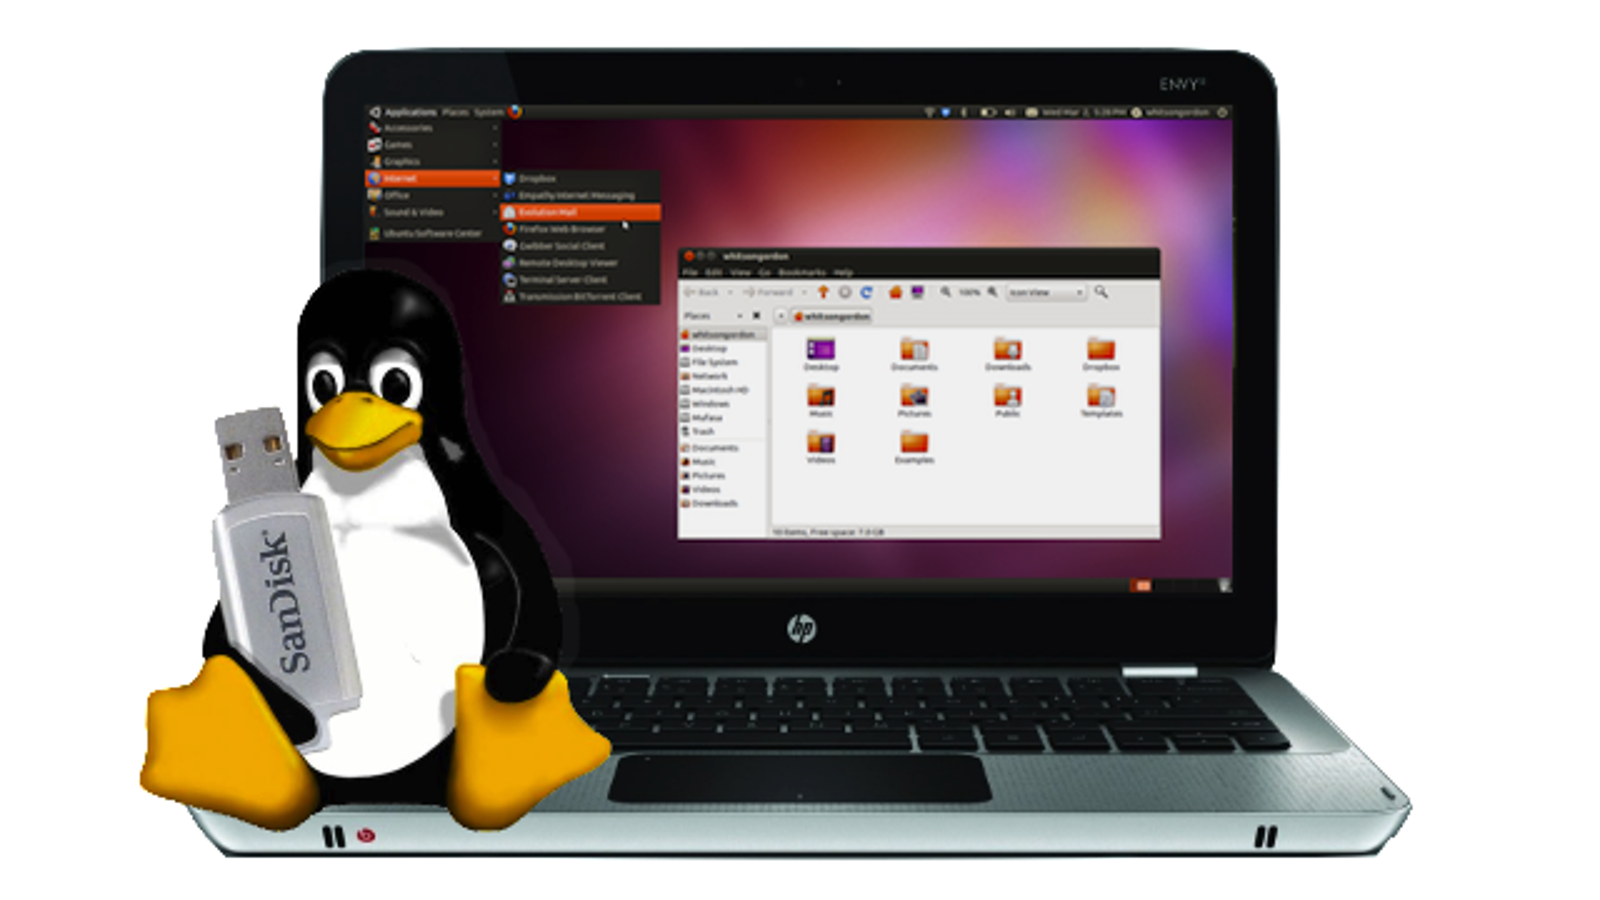 Message linux. Линукс Операционная система. Операционная система компьютера Linux. Оперативная система линукс. ОС семейства Linux.